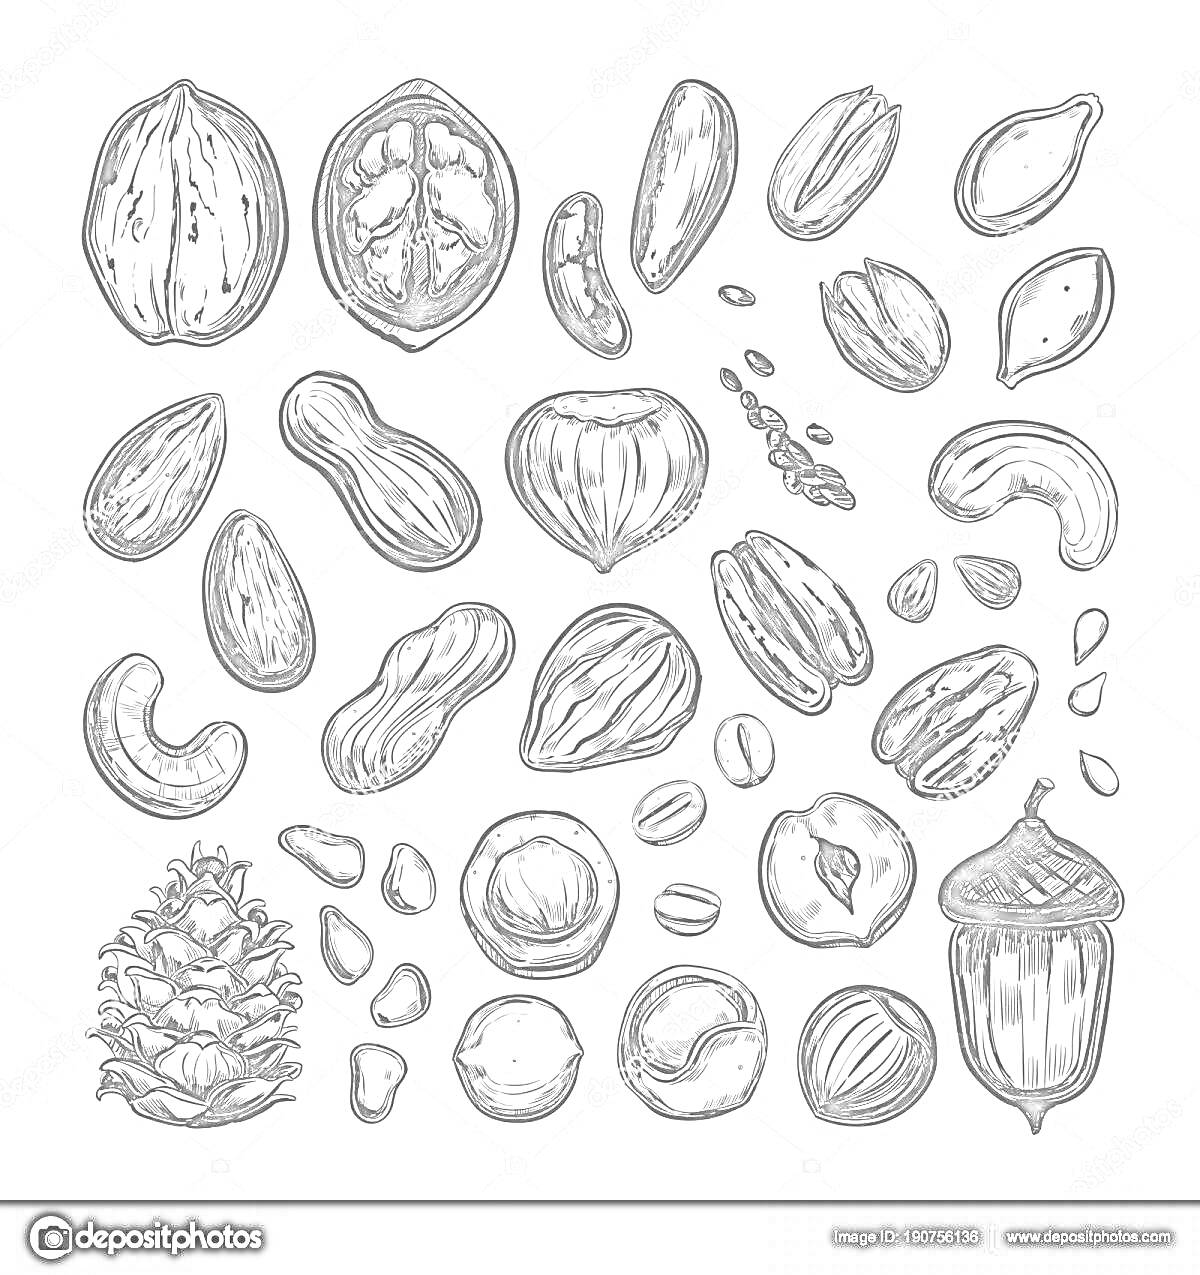 Раскраска Грецкий орех, арахис, миндаль, фисташки, орехи кешью, ежевика, кедровые орехи, орехи макадамия, орехи лещины, желудь